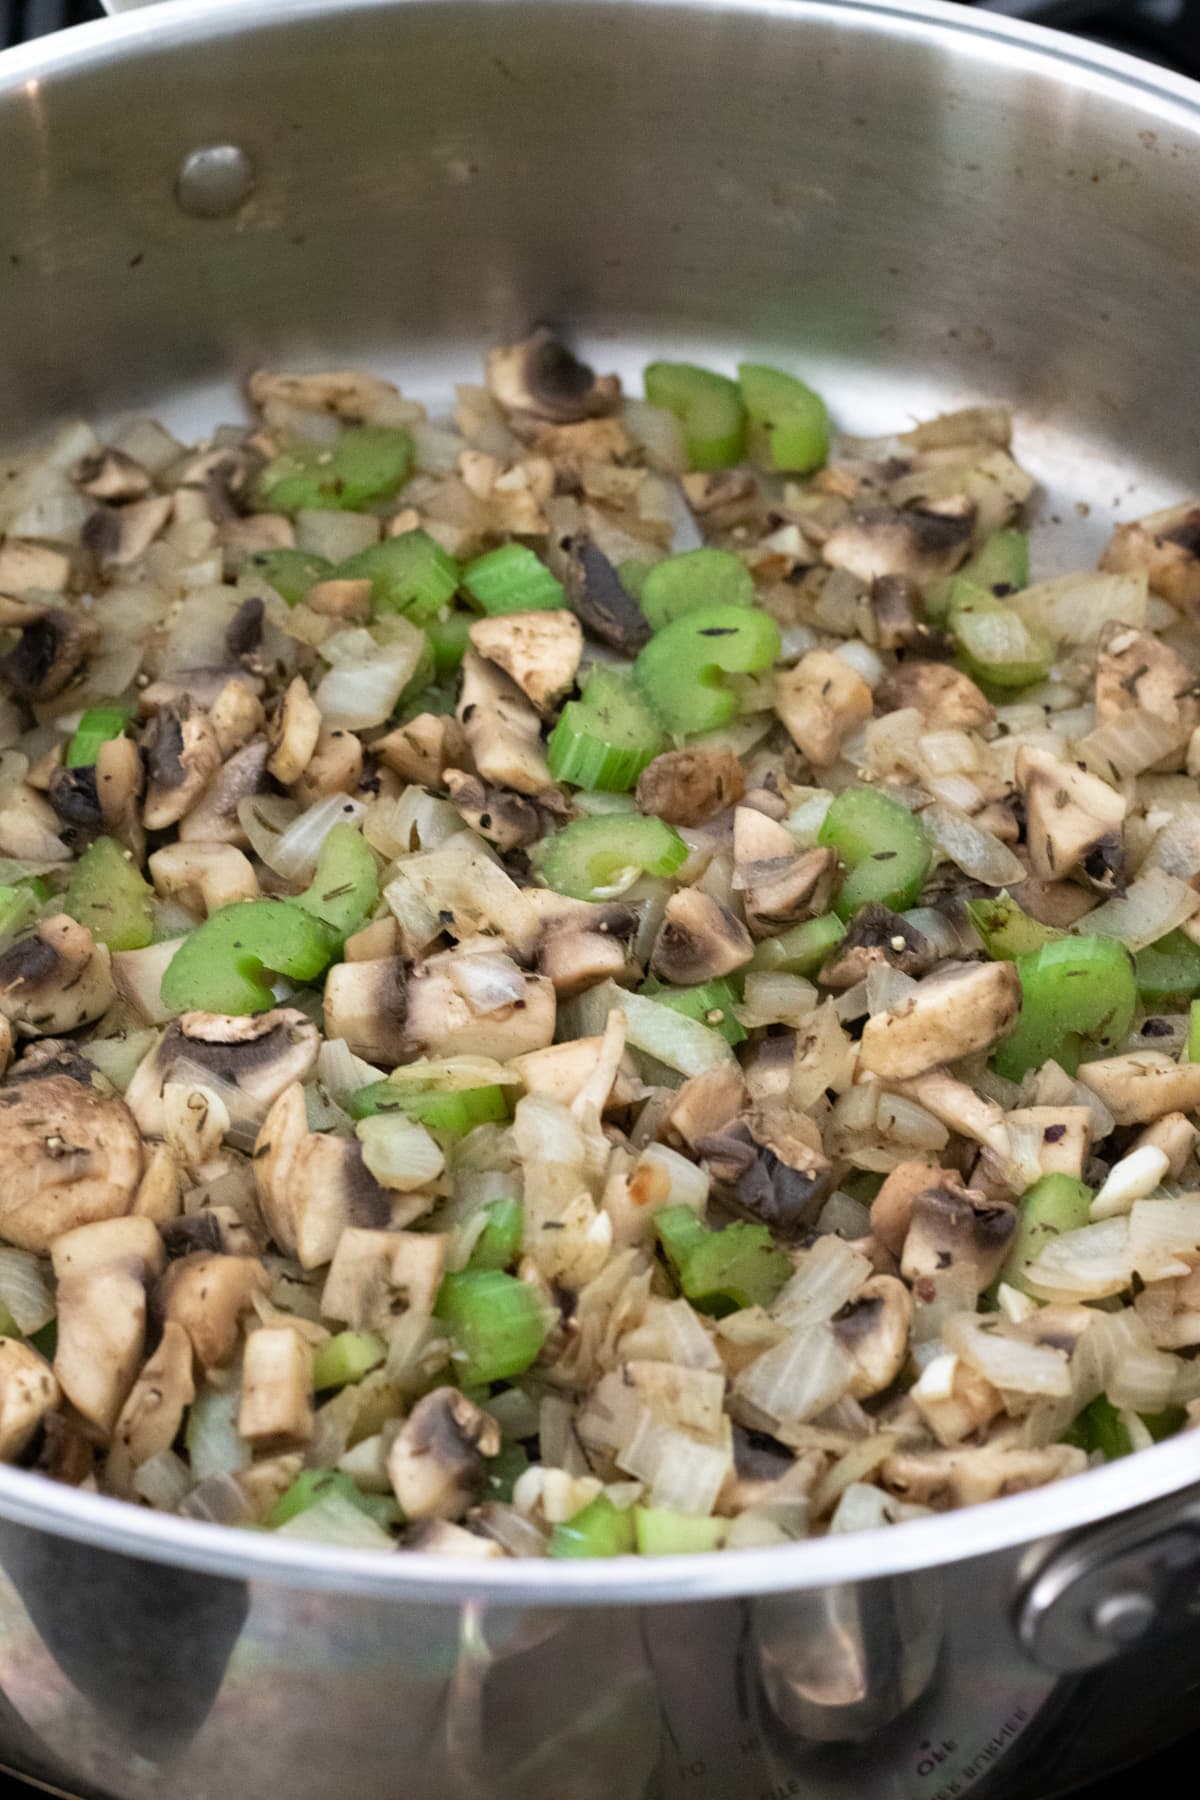 sautéing onion, mushrooms, celery, and herbs.